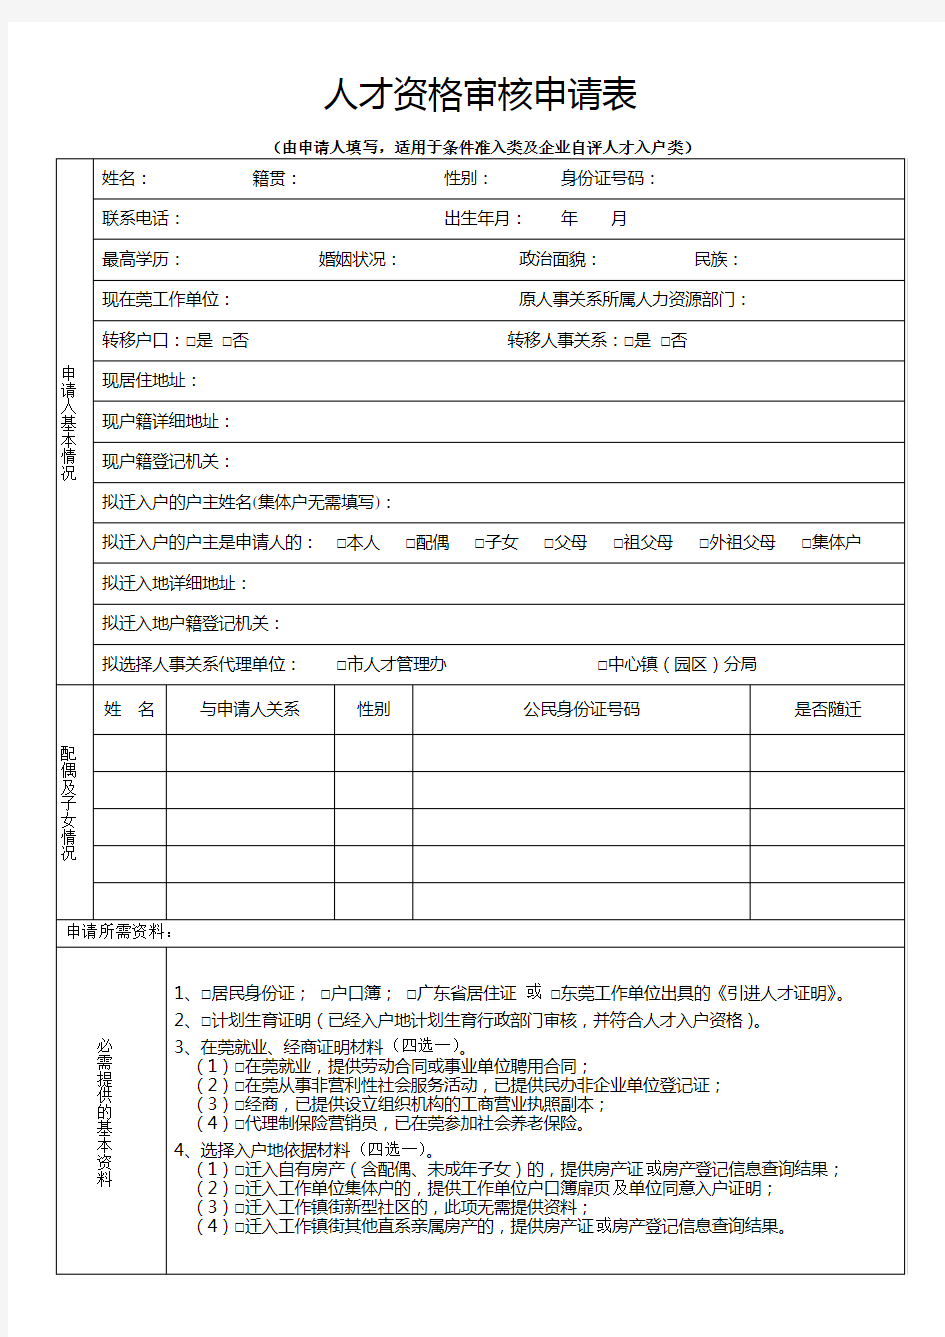 东莞市 条件准入及企业自评人才入户申请表